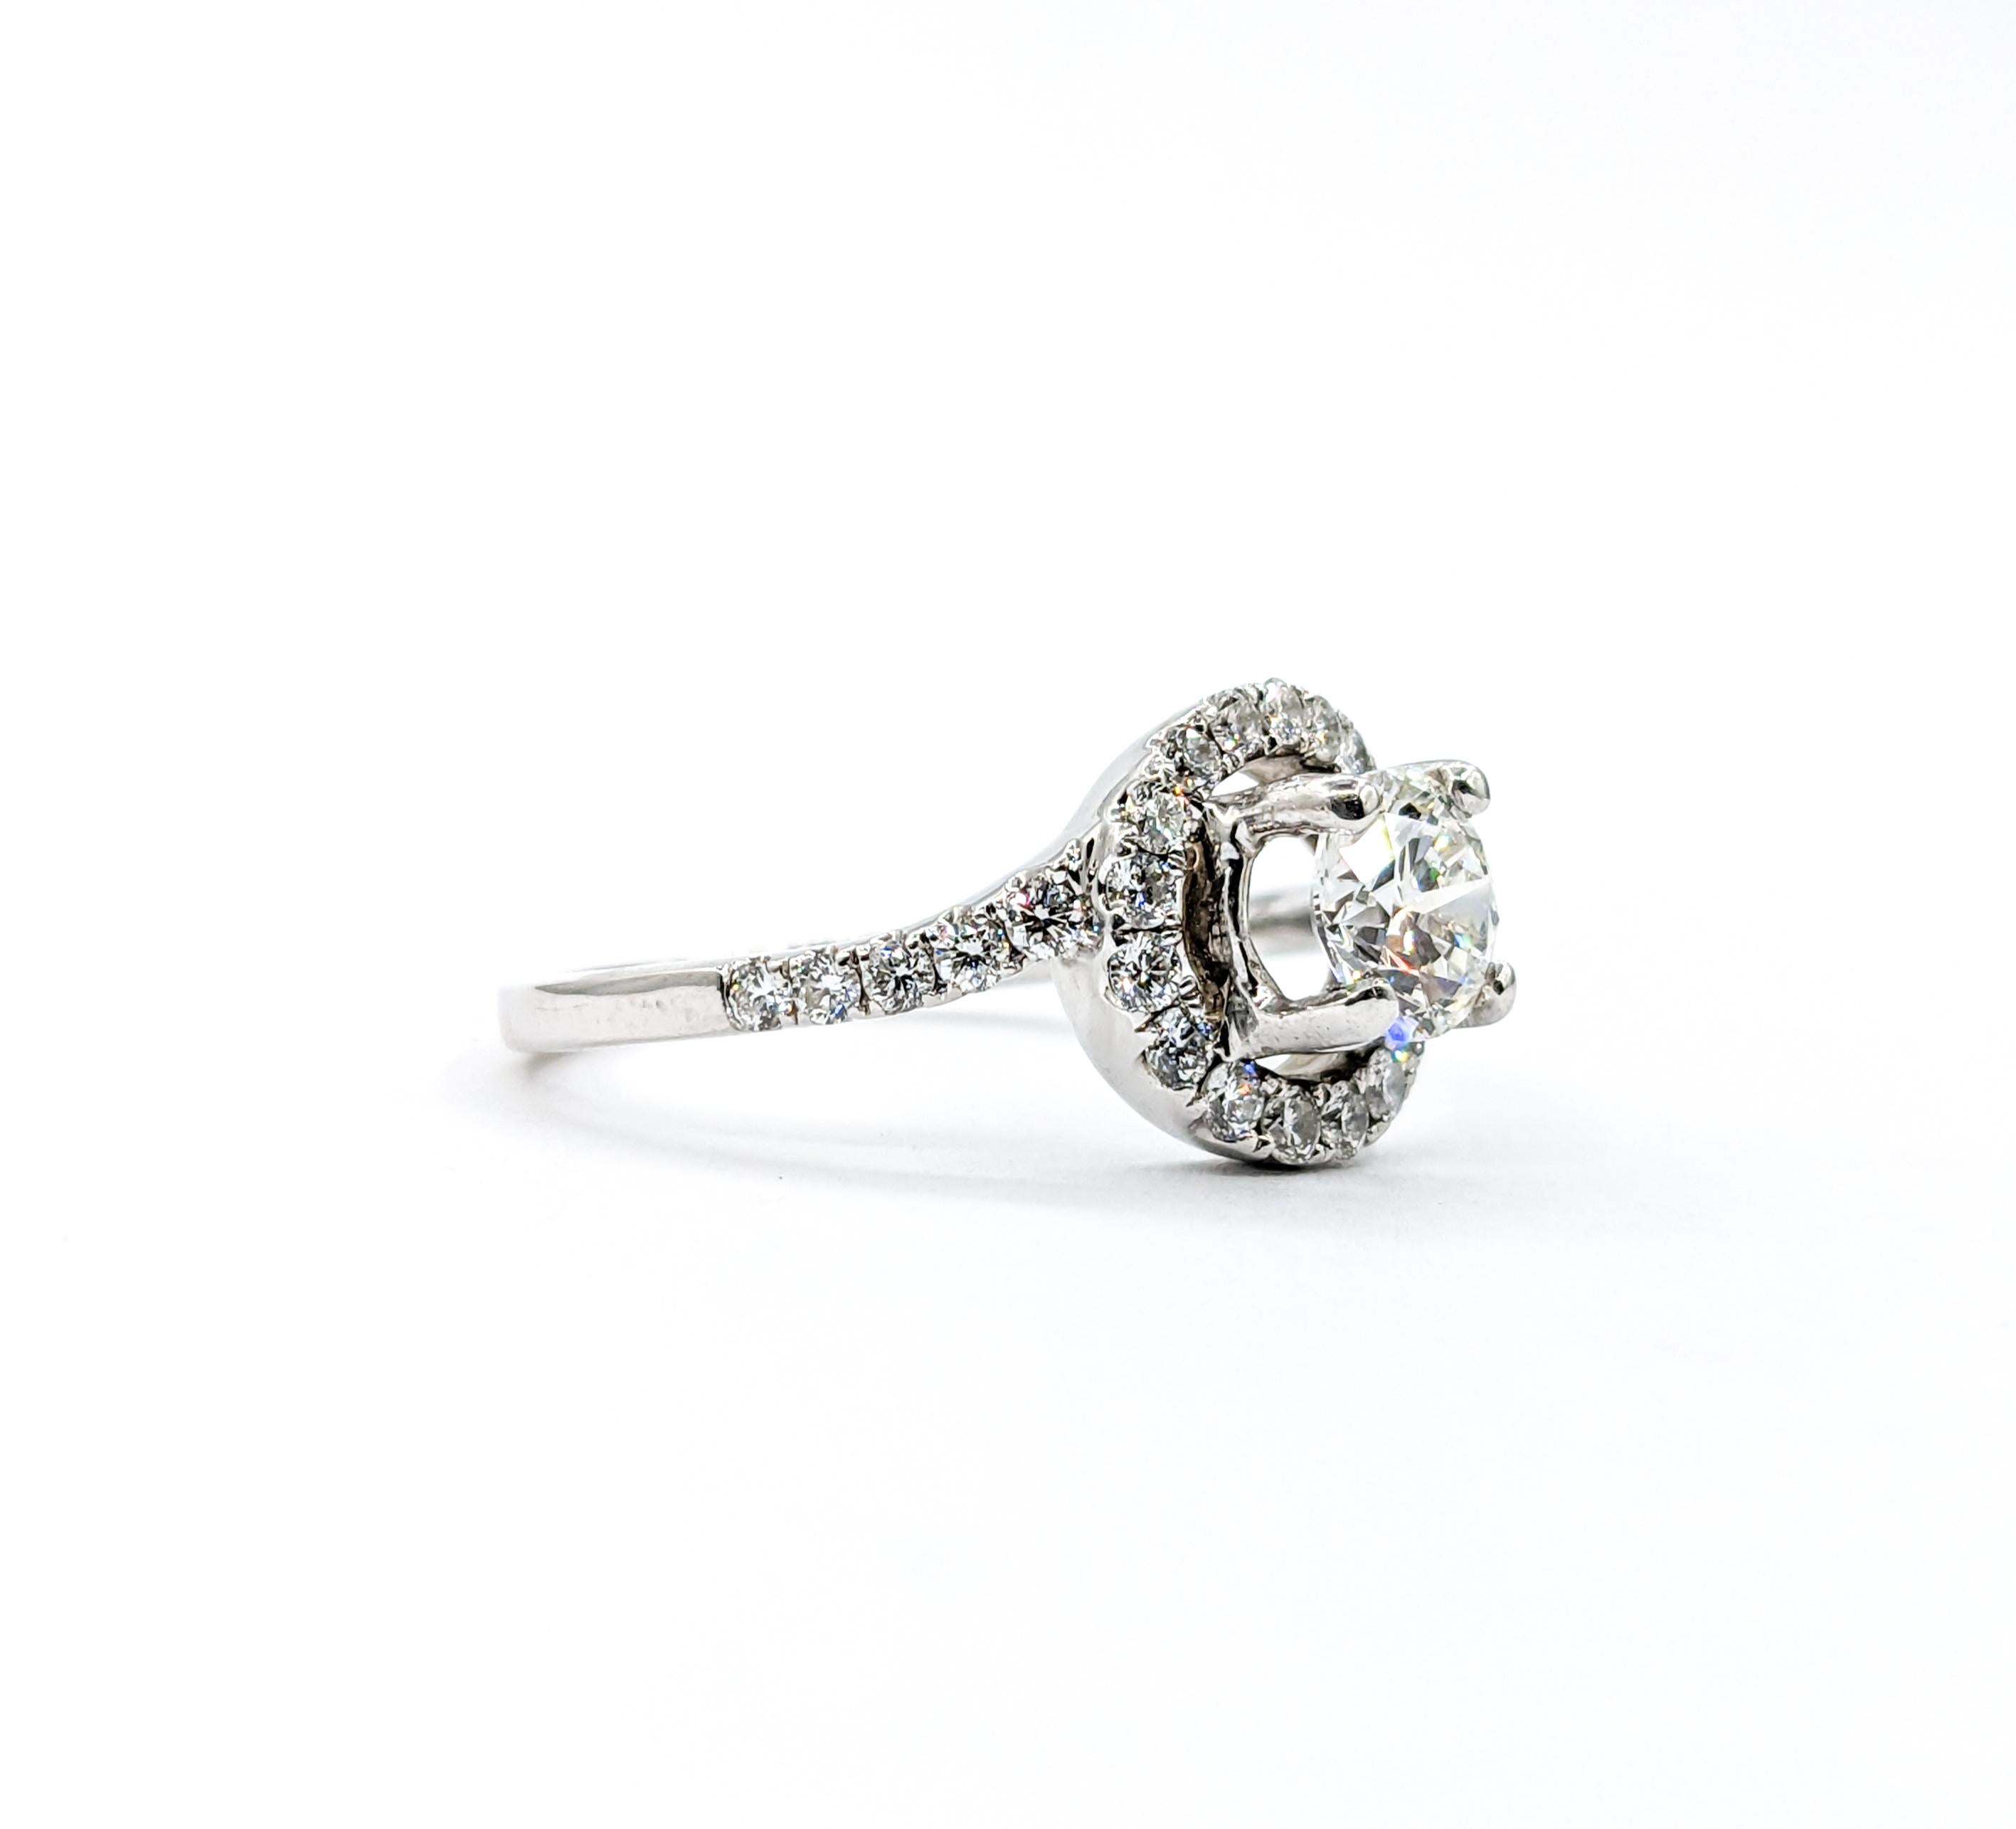 GIA Graded VVS1 Diamond Engagement Ring White Gold  For Sale 1